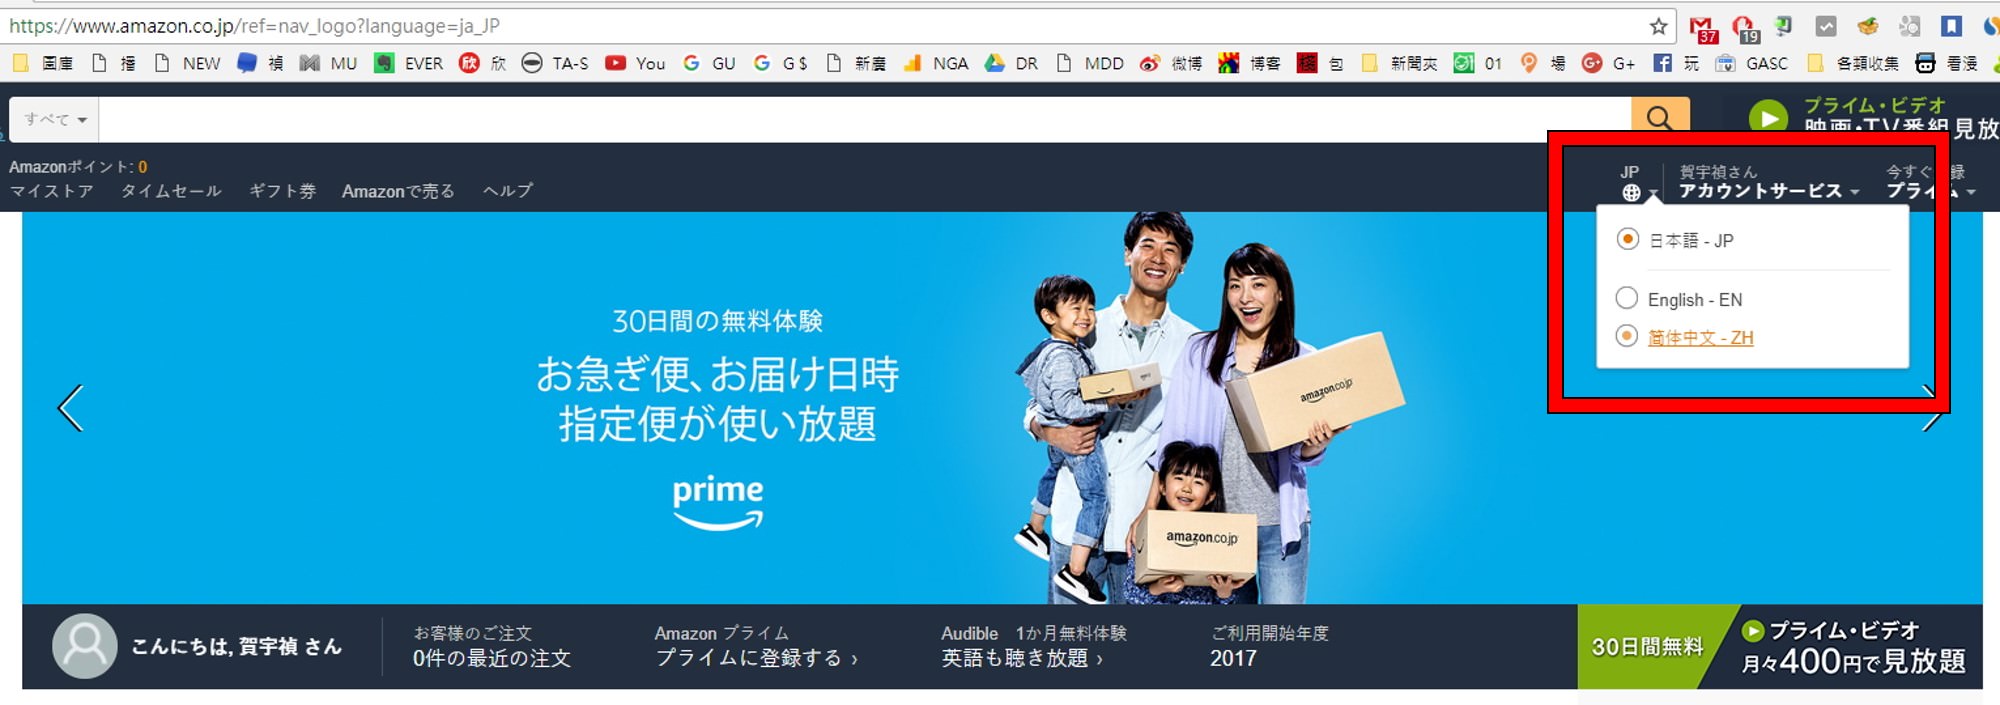 [教學] 有台灣網路買不到的東西嗎? 到日本亞馬遜 Amazon JP 超簡單教學